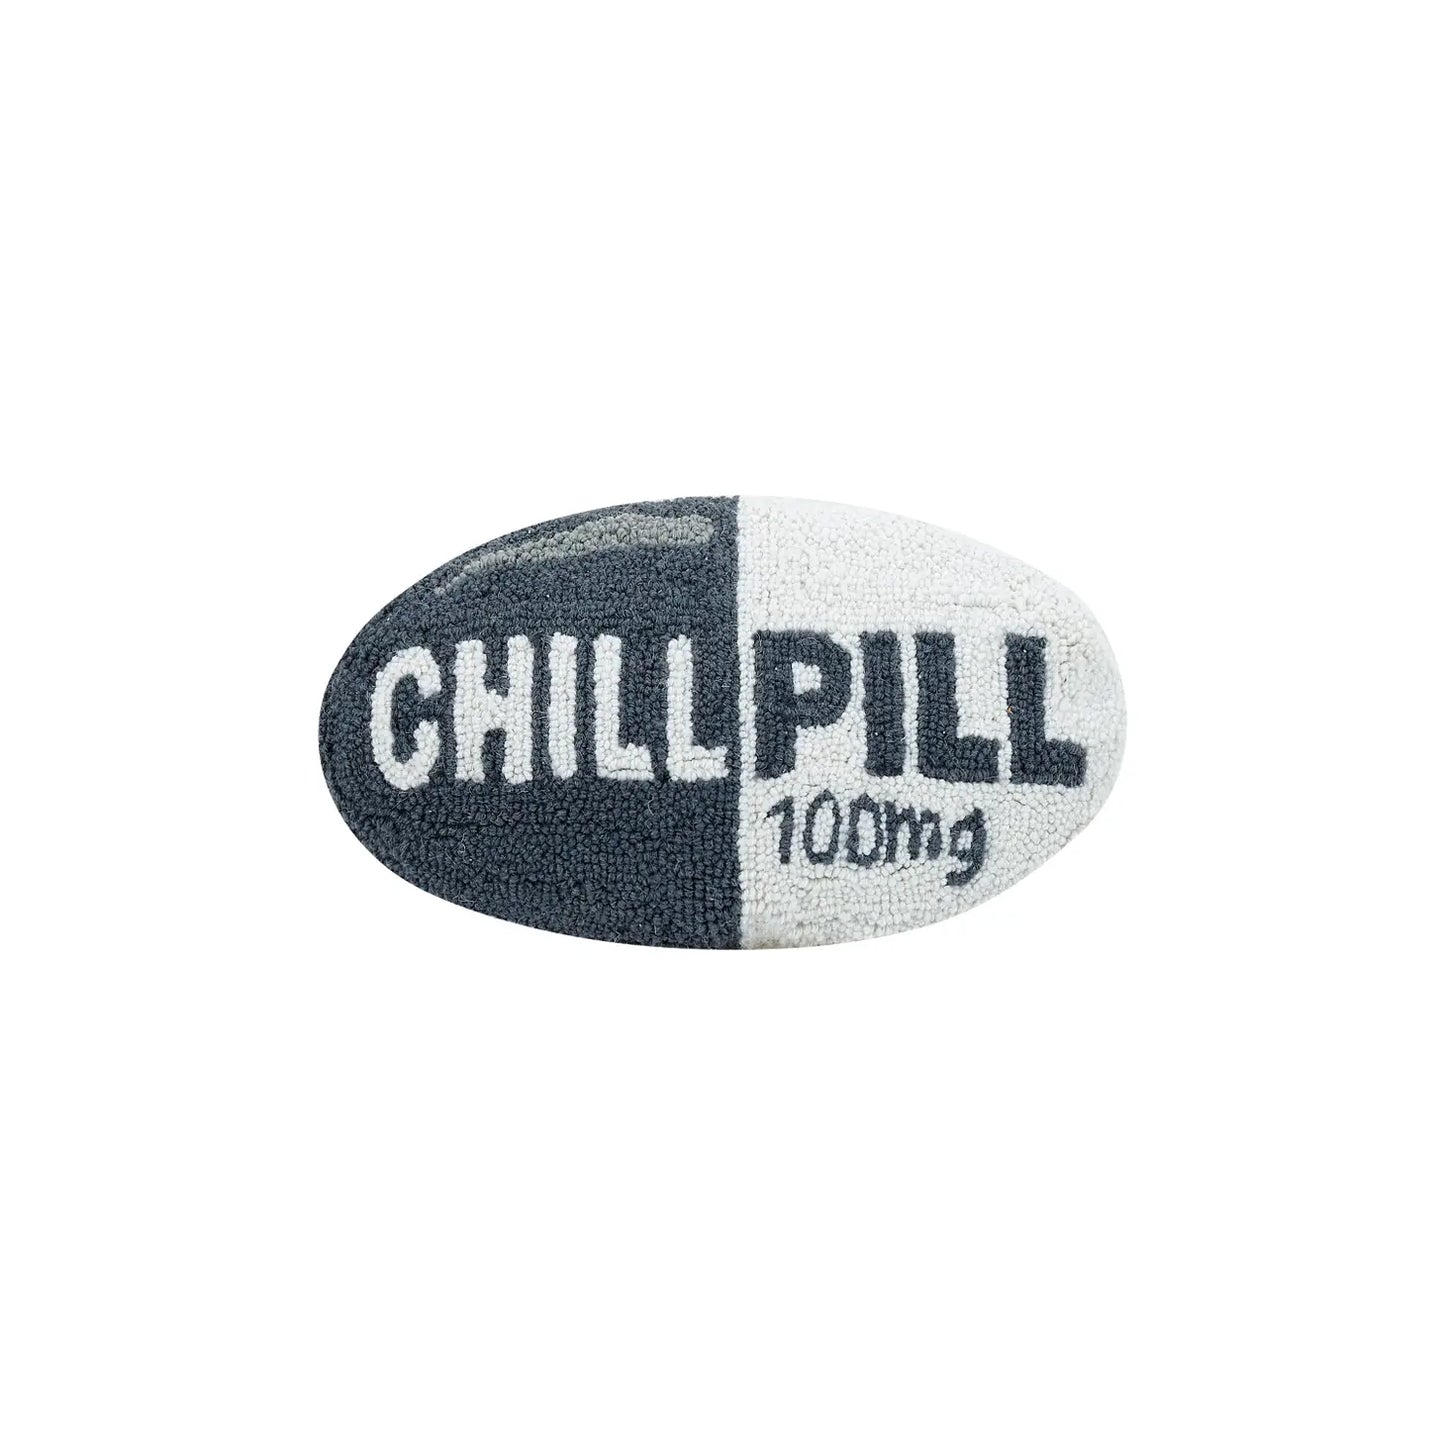 Chill Pill Hook Pillow